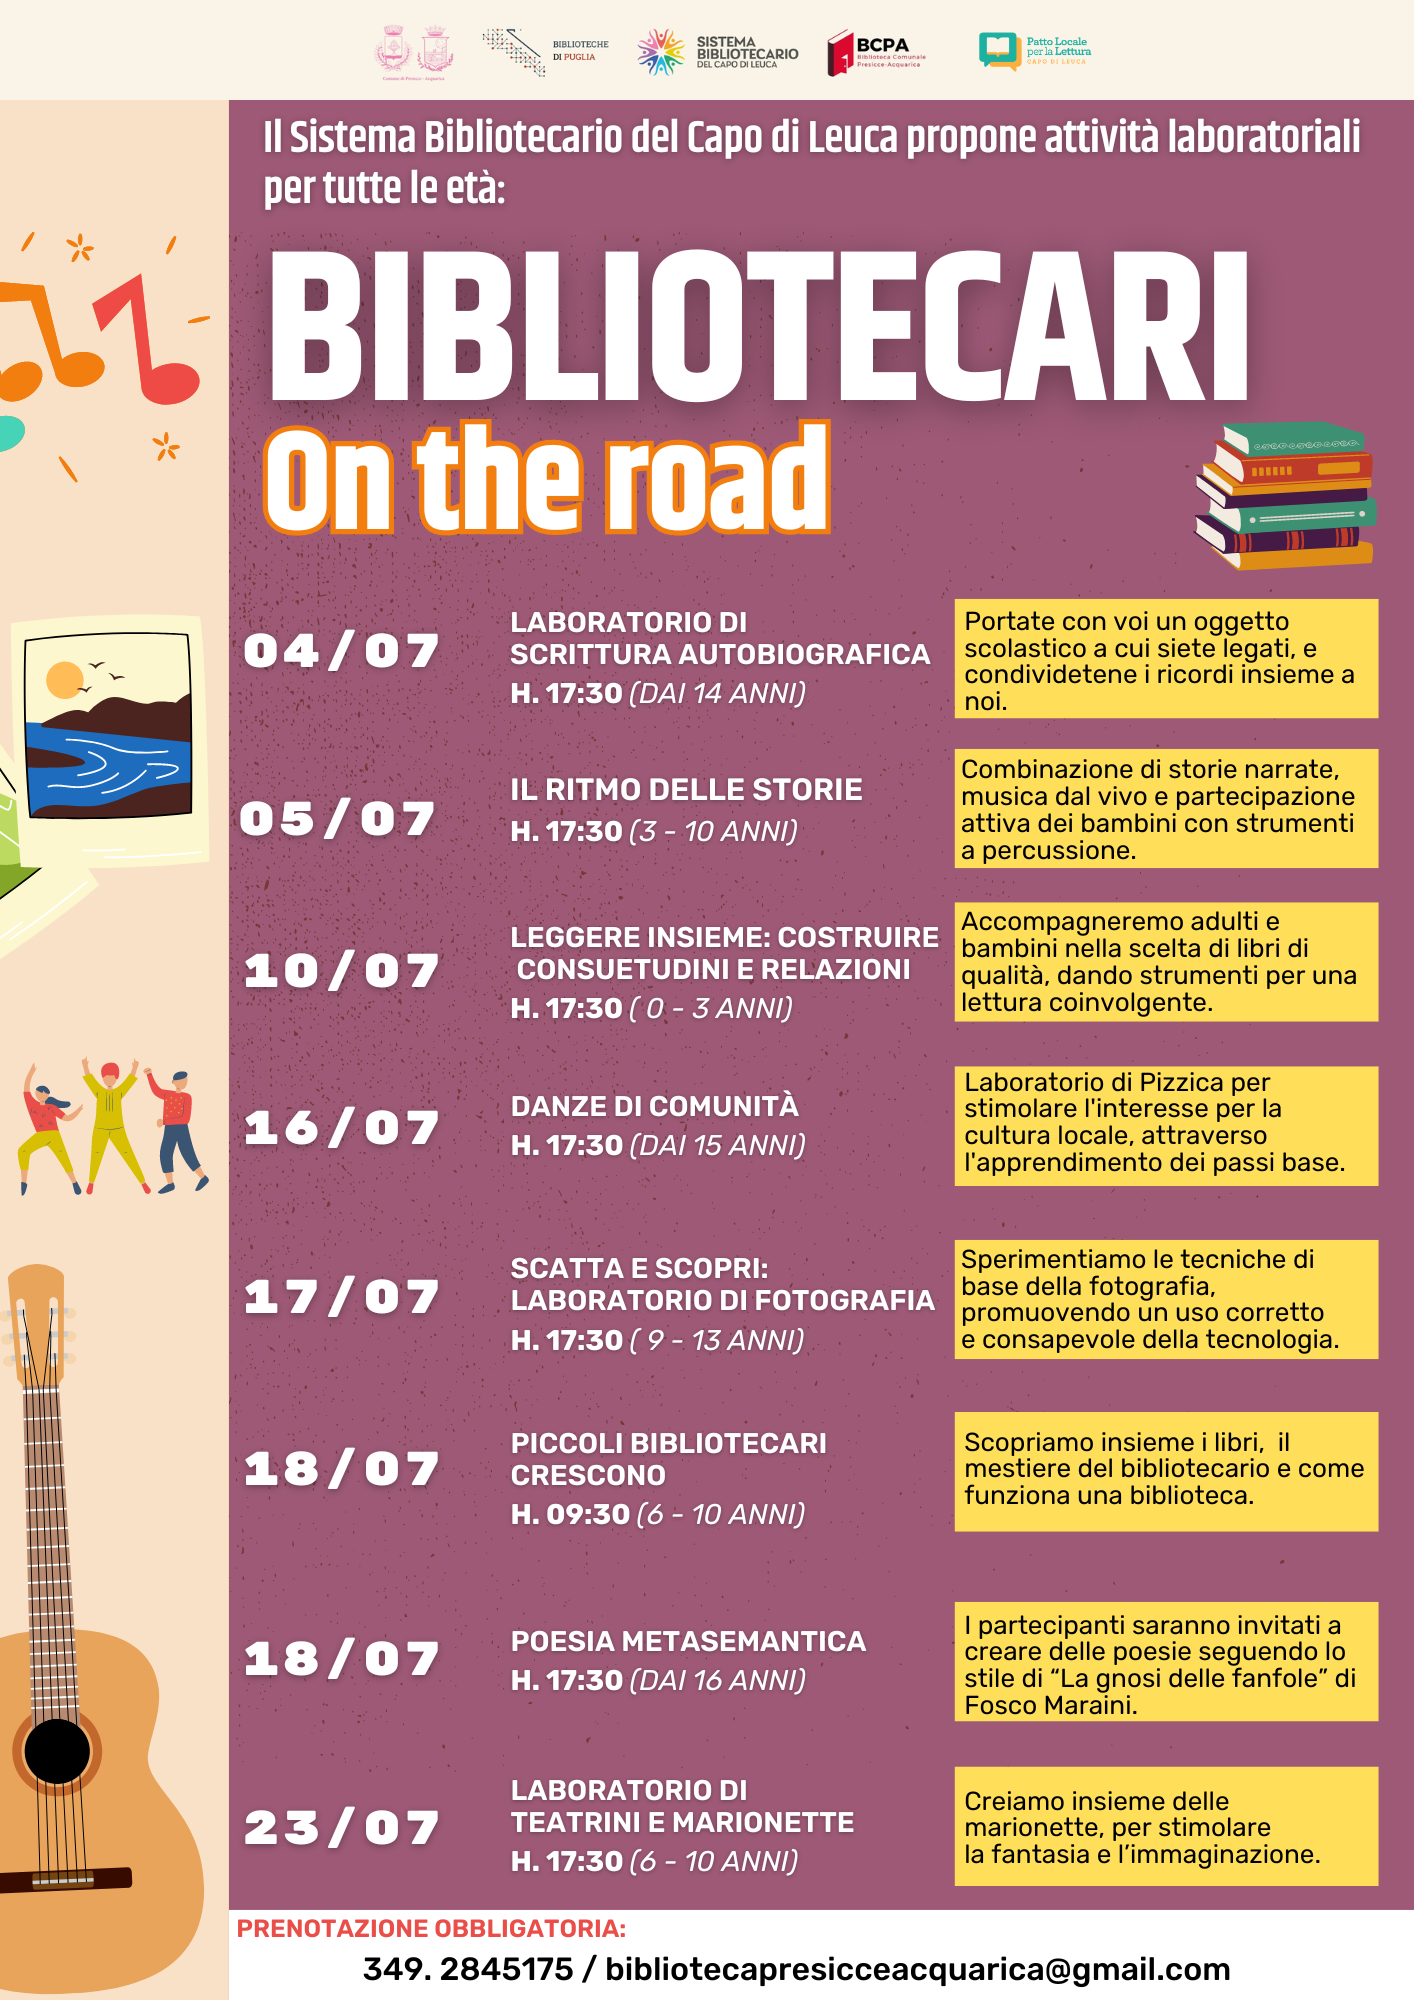 BIBLIOTECARI ON THE ROAD